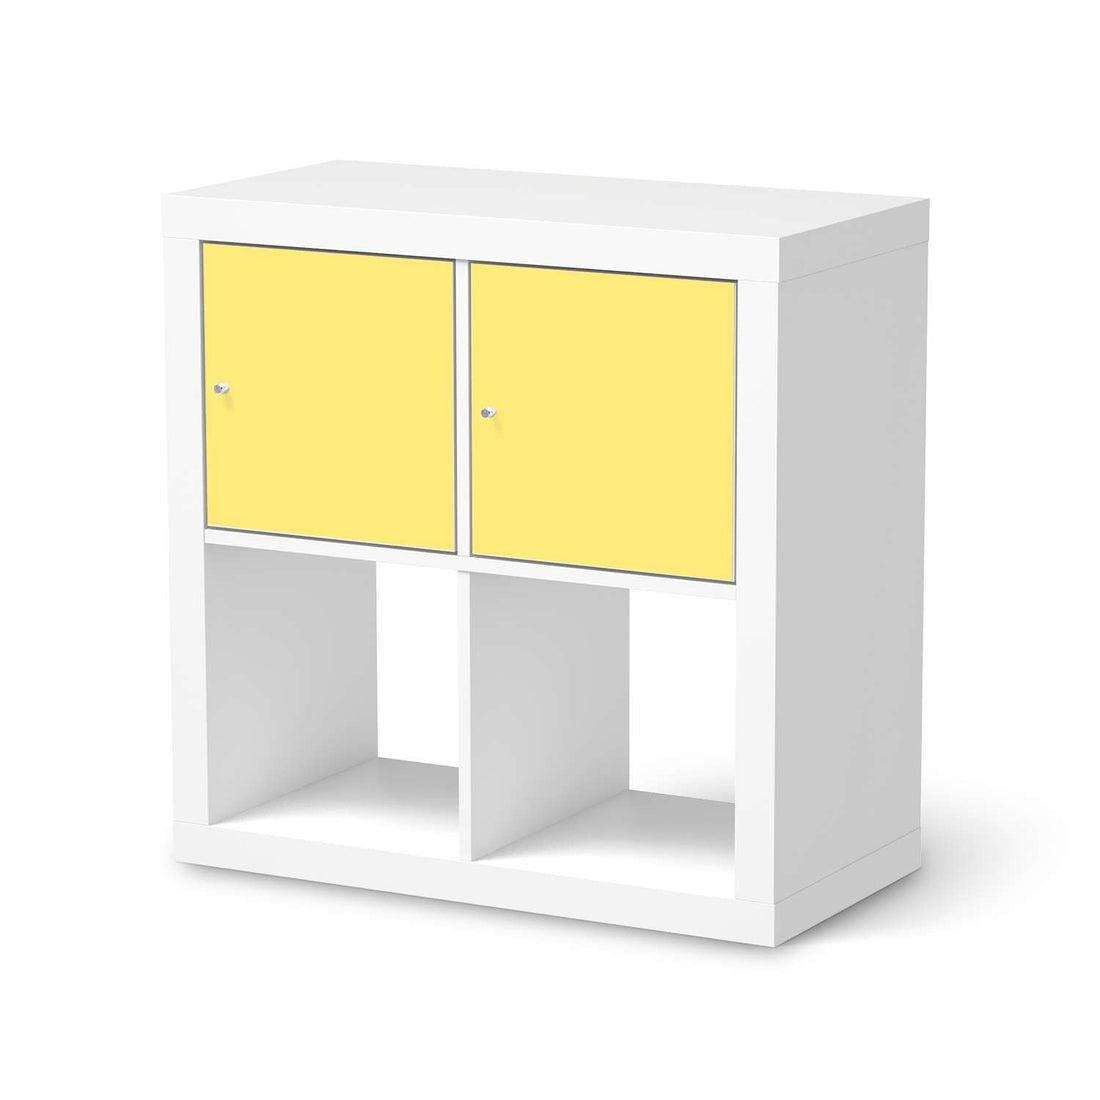 Möbelfolie Gelb Light - IKEA Kallax Regal 2 Türen Quer  - weiss